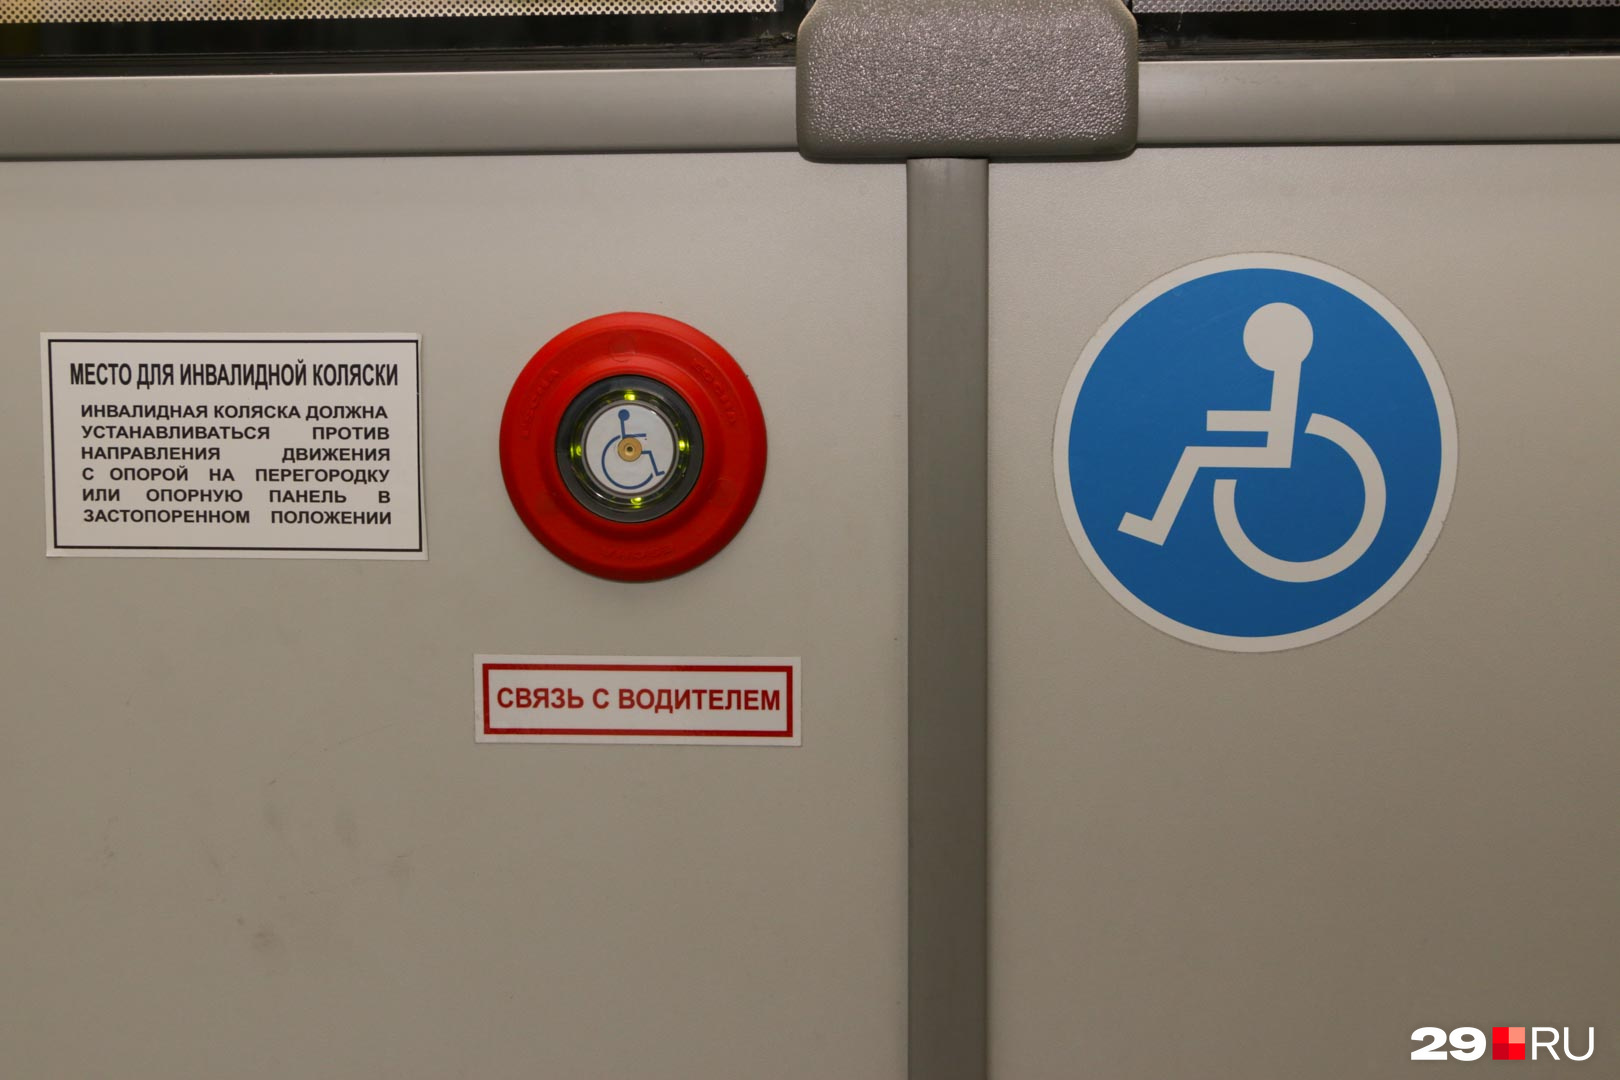 Из салона автобуса инвалид-колясочник тоже может связаться с водителем